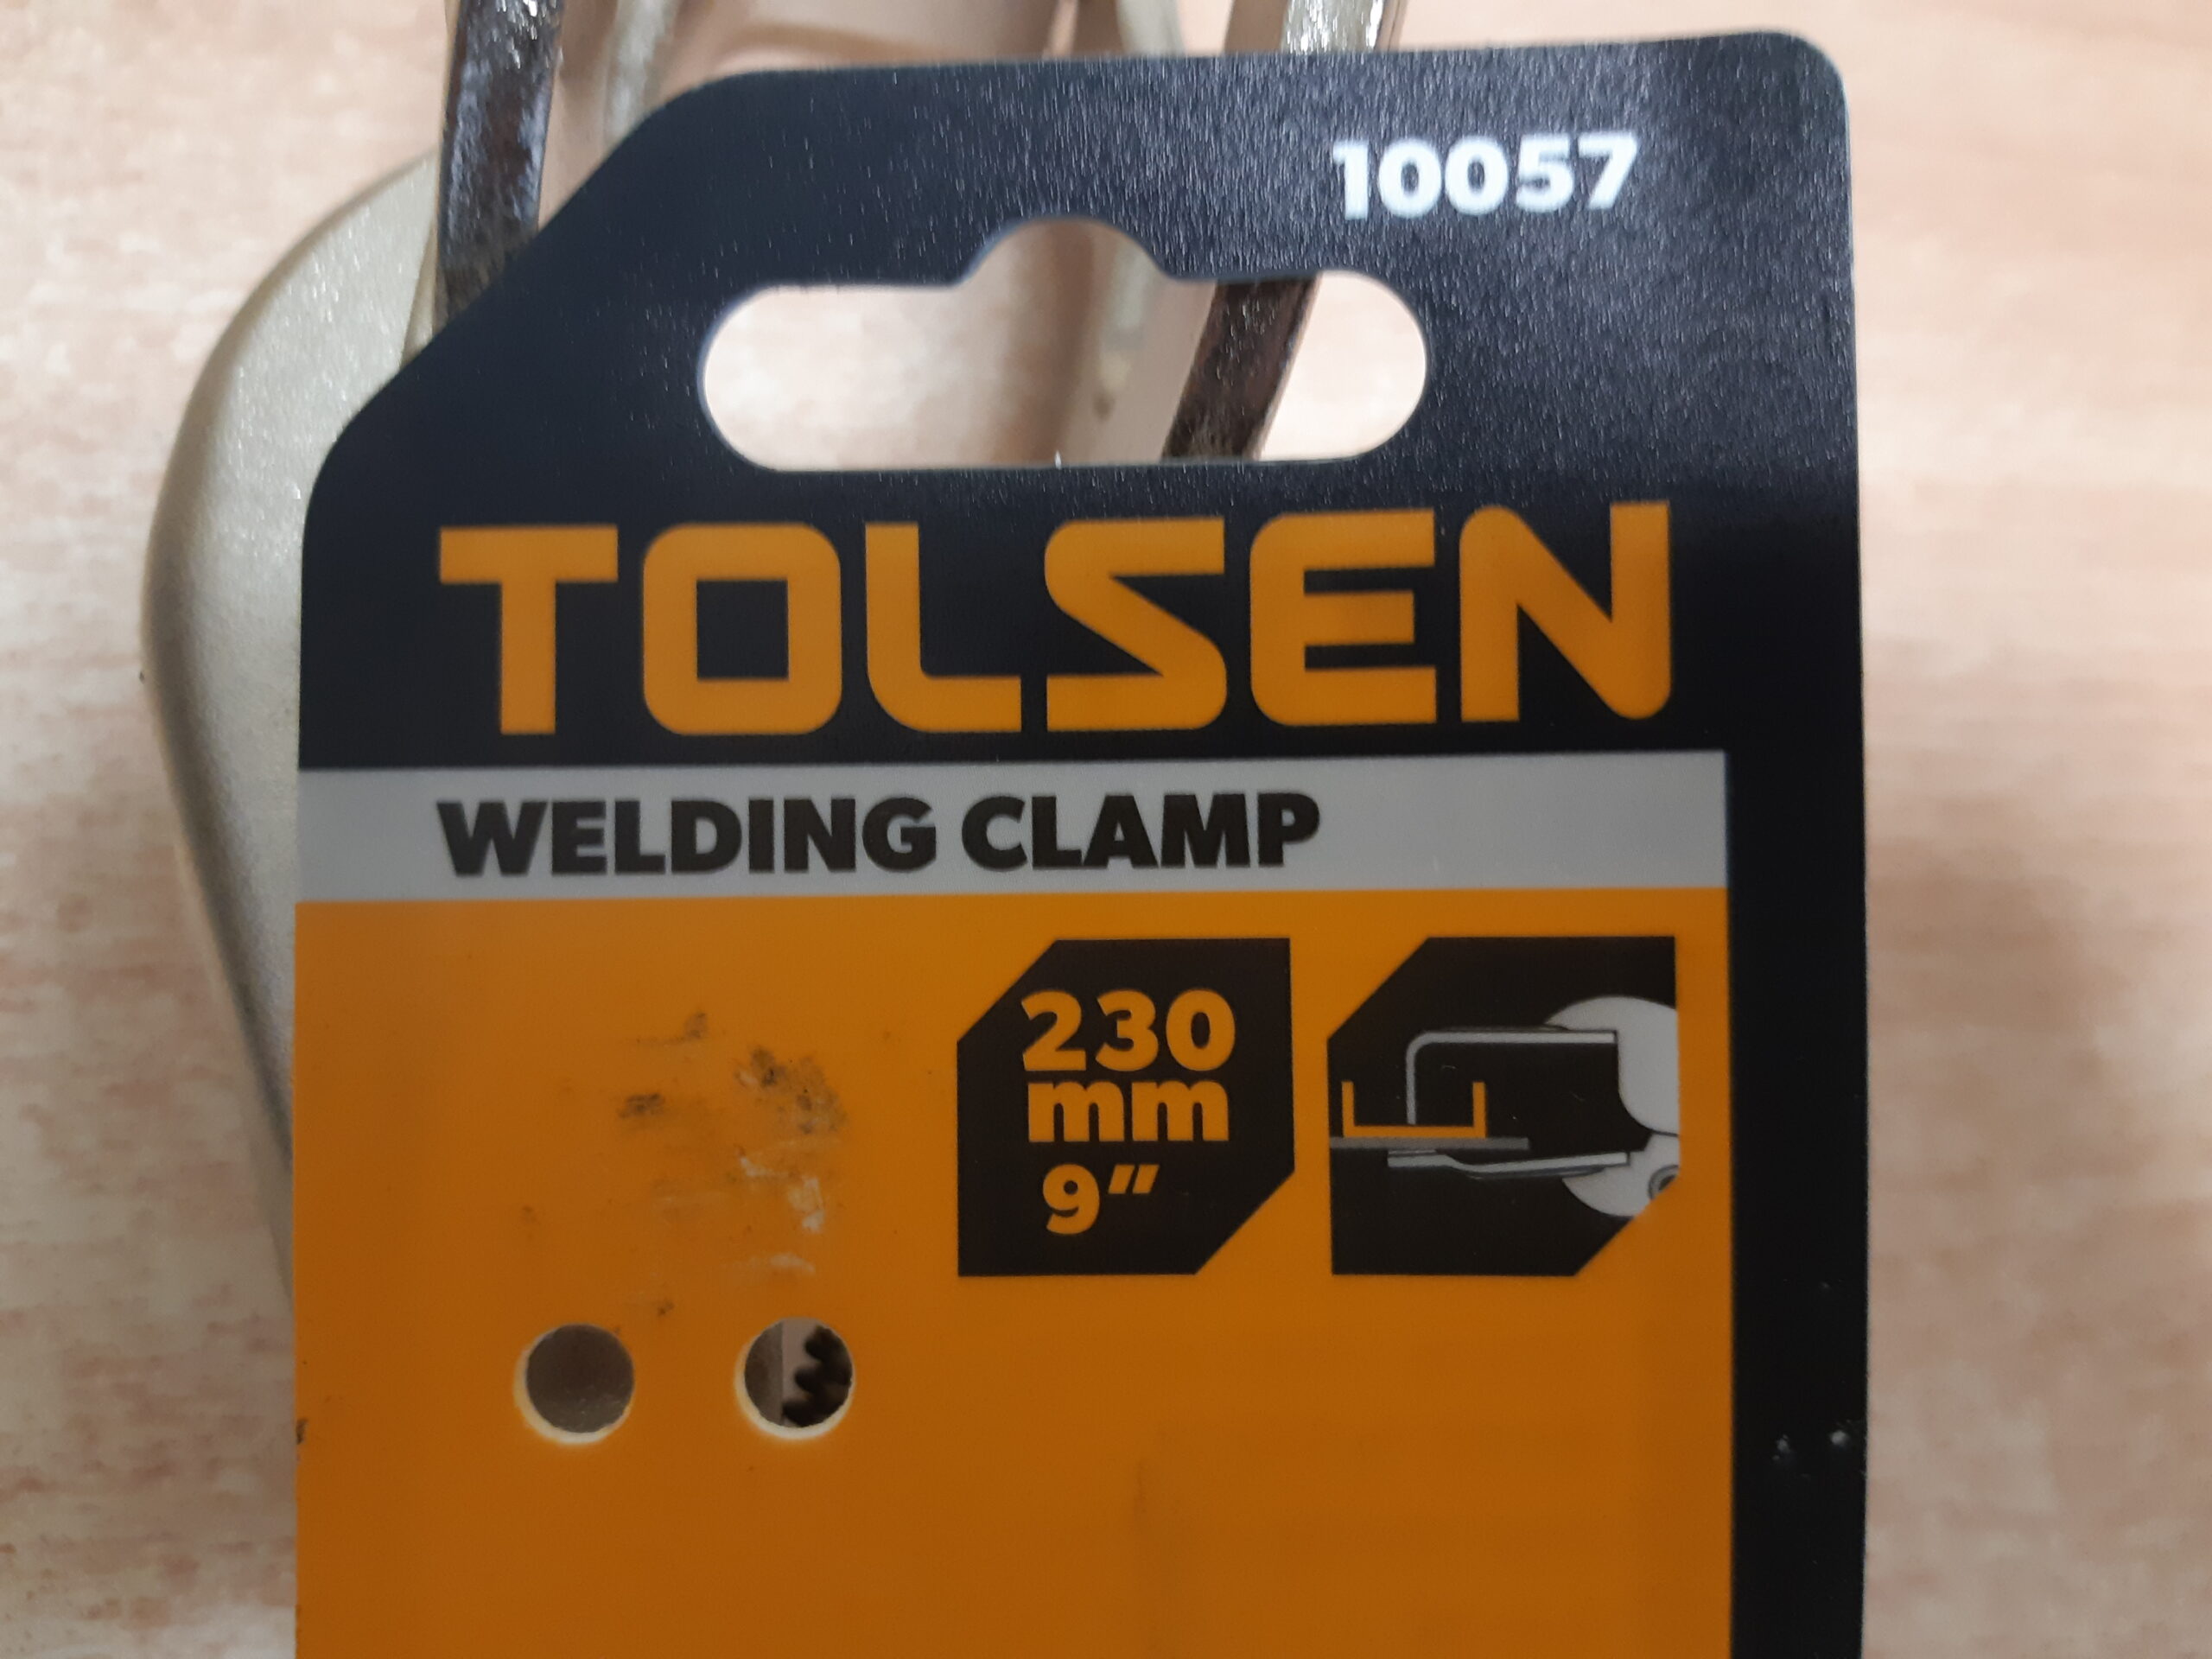 Tools24 - lukustatavad tangid keevituseks Tolsen 10057-5